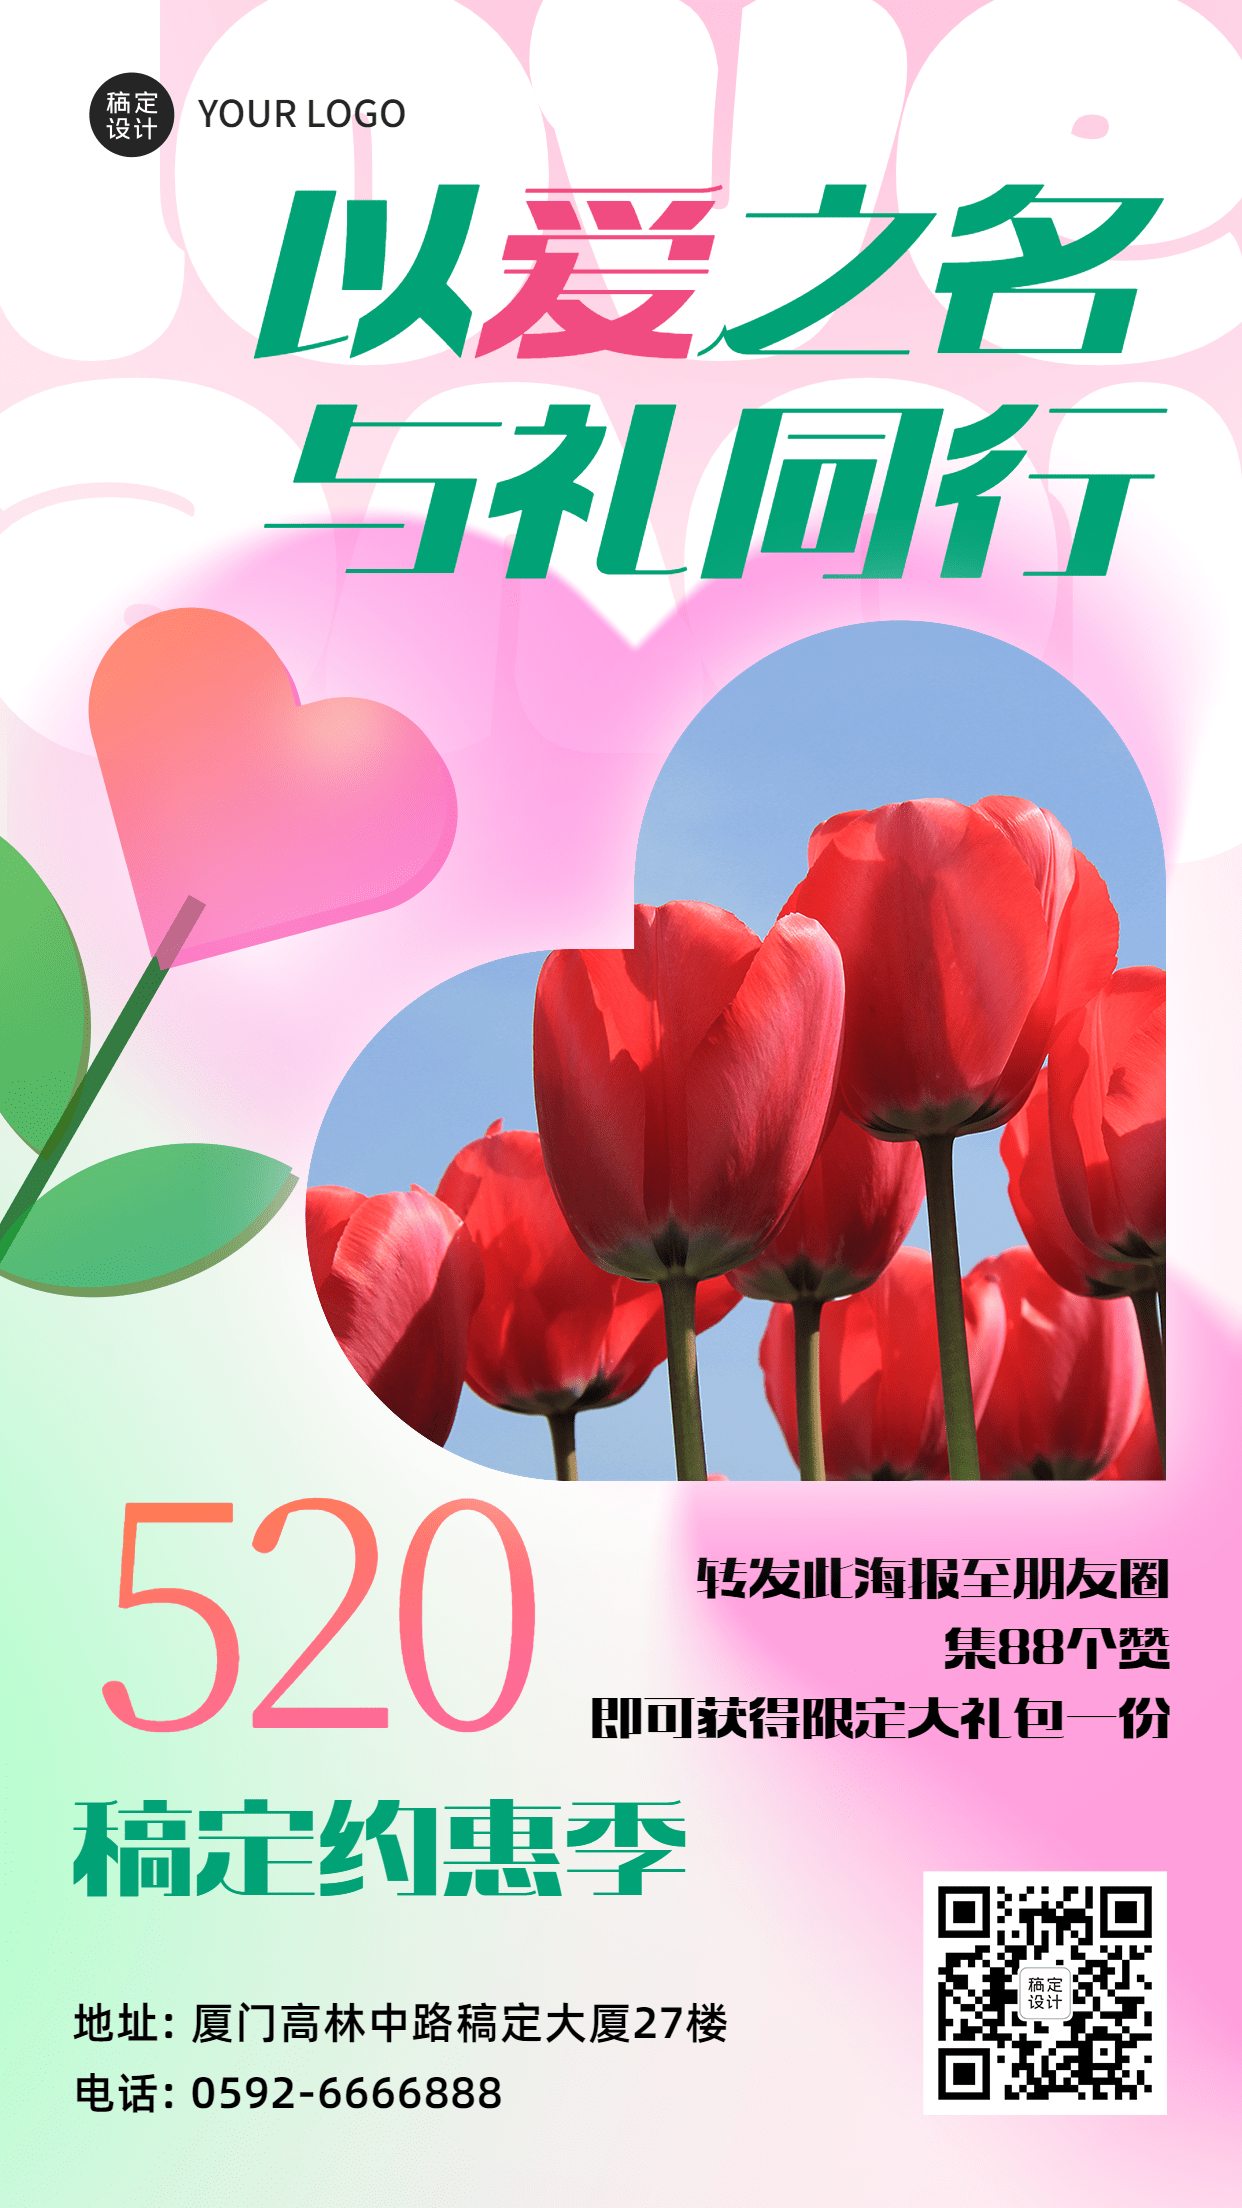 520情人节节日祝福郁金香排版手机海报预览效果